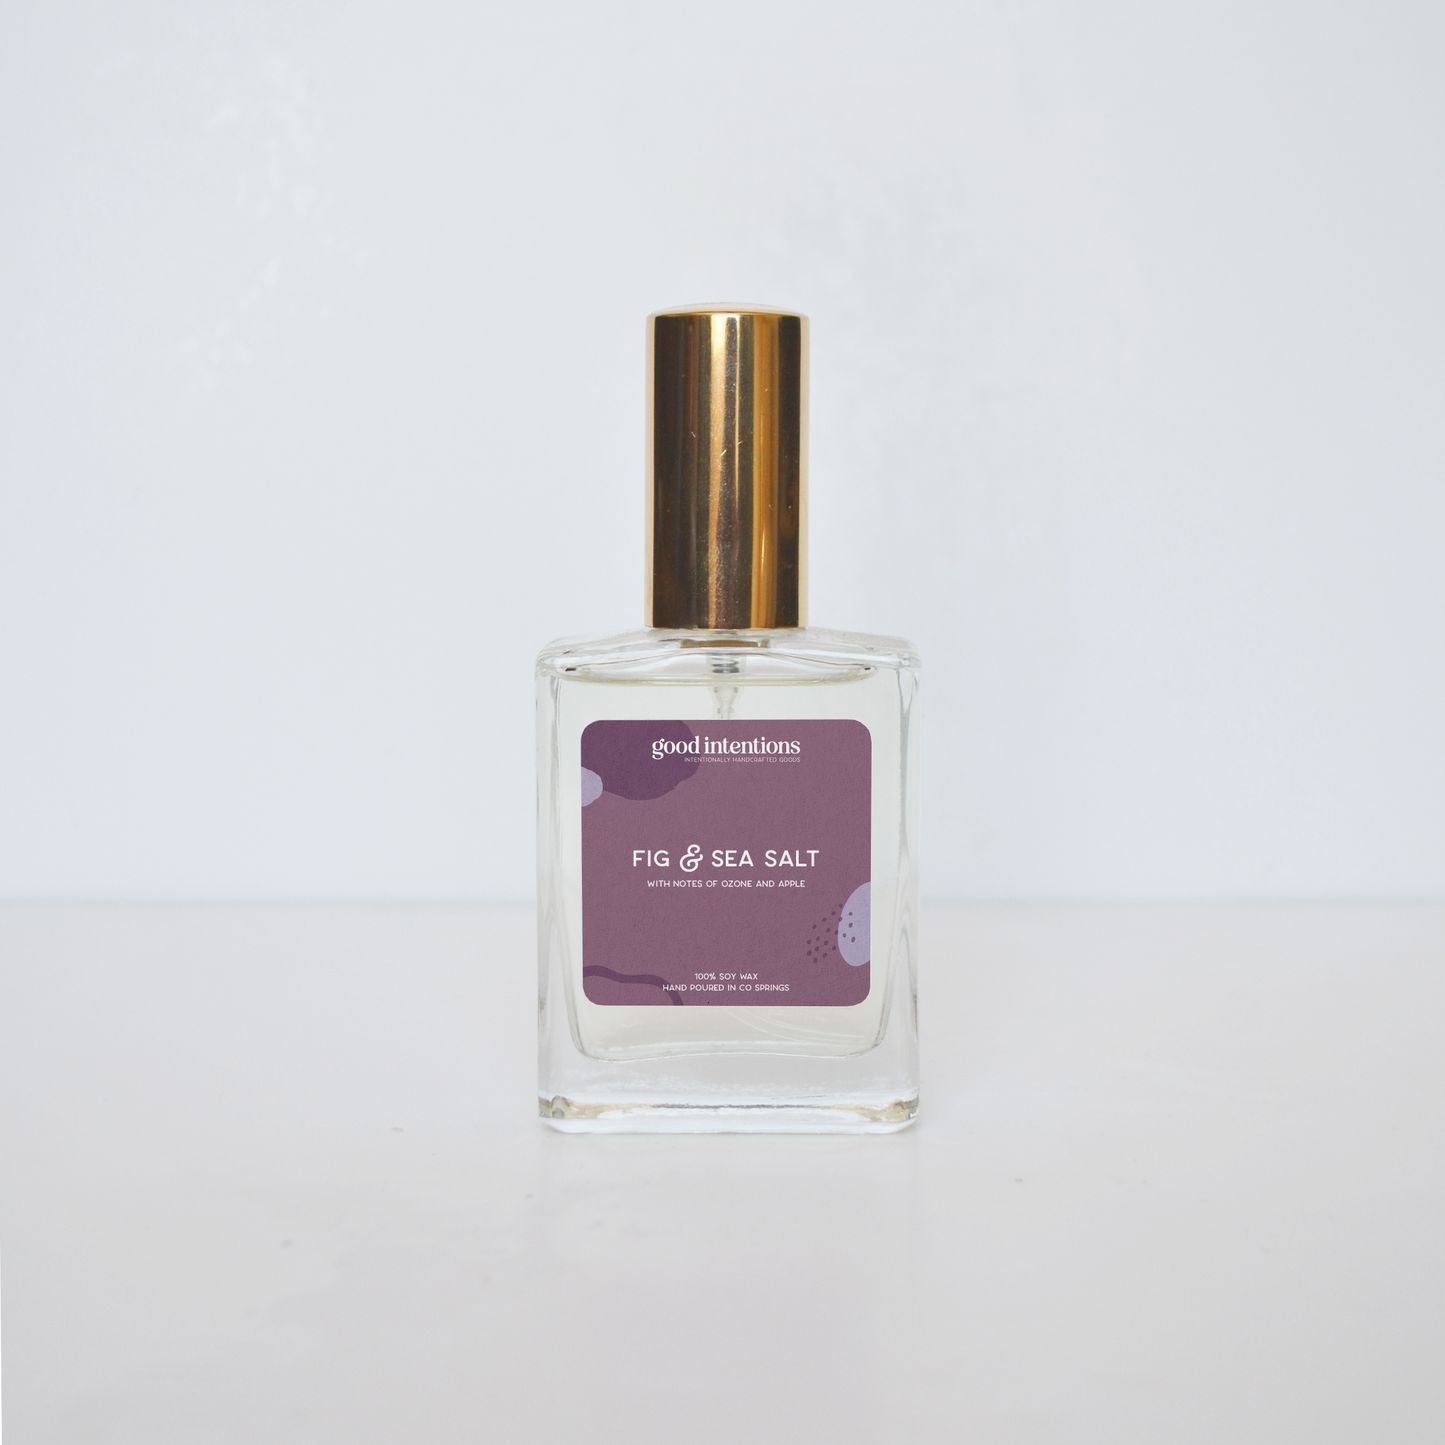 Fig & Sea Salt Perfume